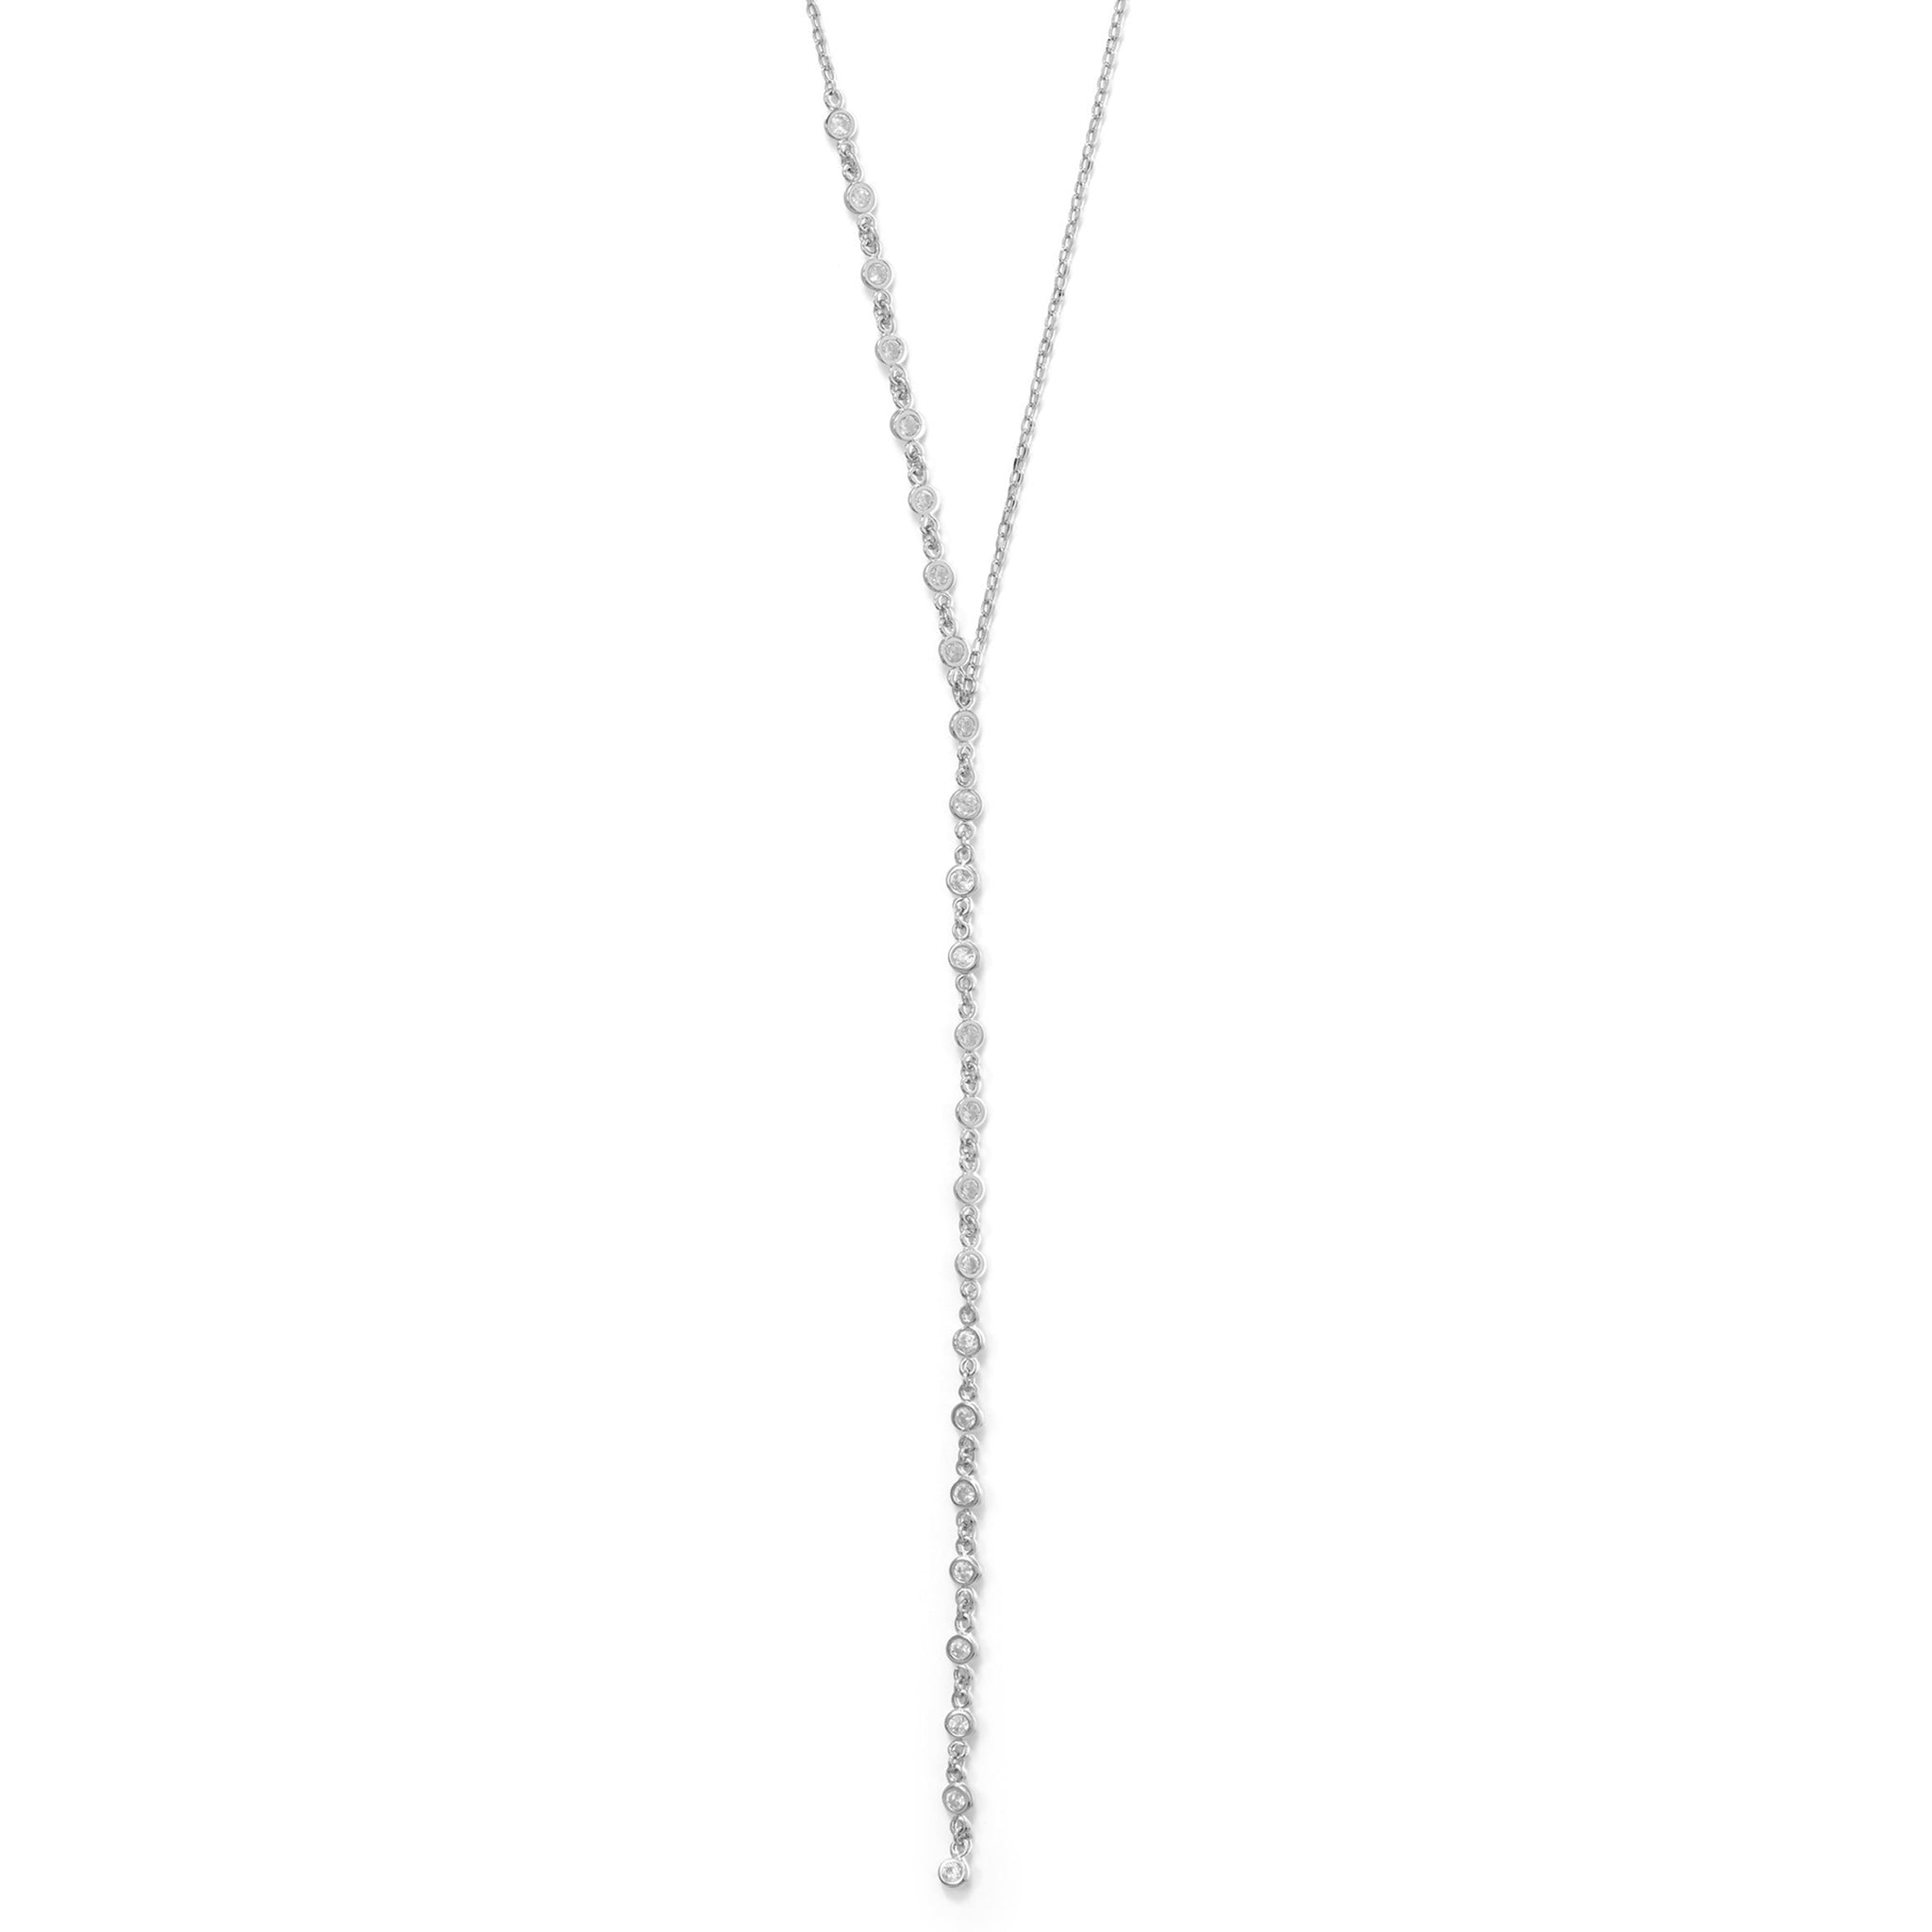 Lariat Style Zirconia Necklace